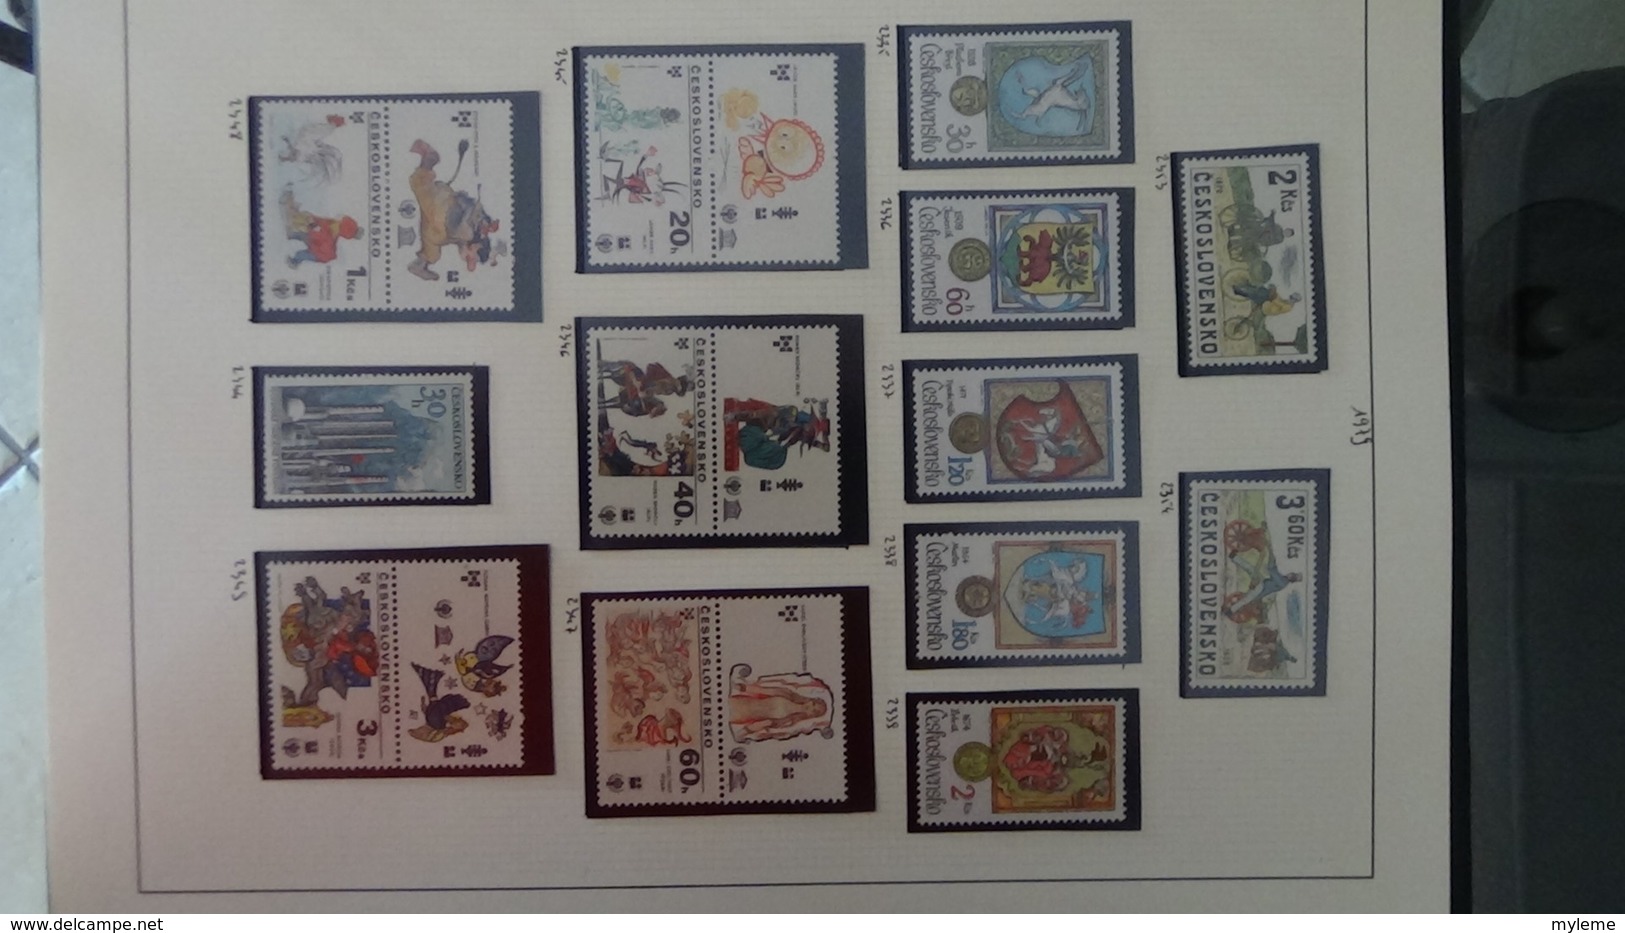 Collection de timbres Tchecoslovaquie ** N° 1615 à 2659 manque 7 timbres . Voir commentaires